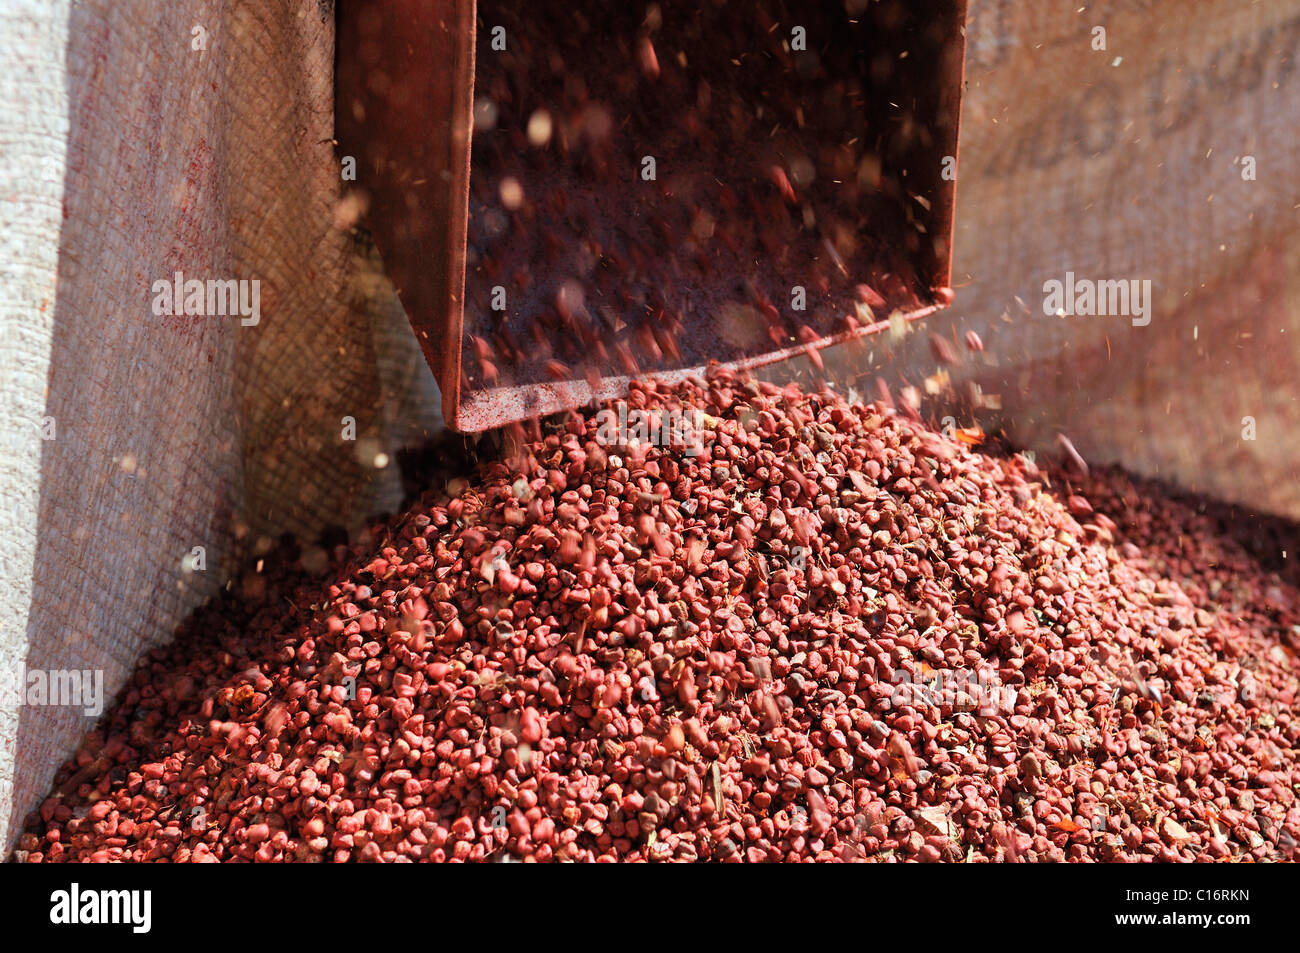 Pour le nettoyage du ventilateur à partir de graines de rocou l'achiote (Bixa orellana), à partir de laquelle le pigment rouge pour l'alimentation et des cosmétiques est extrait Banque D'Images